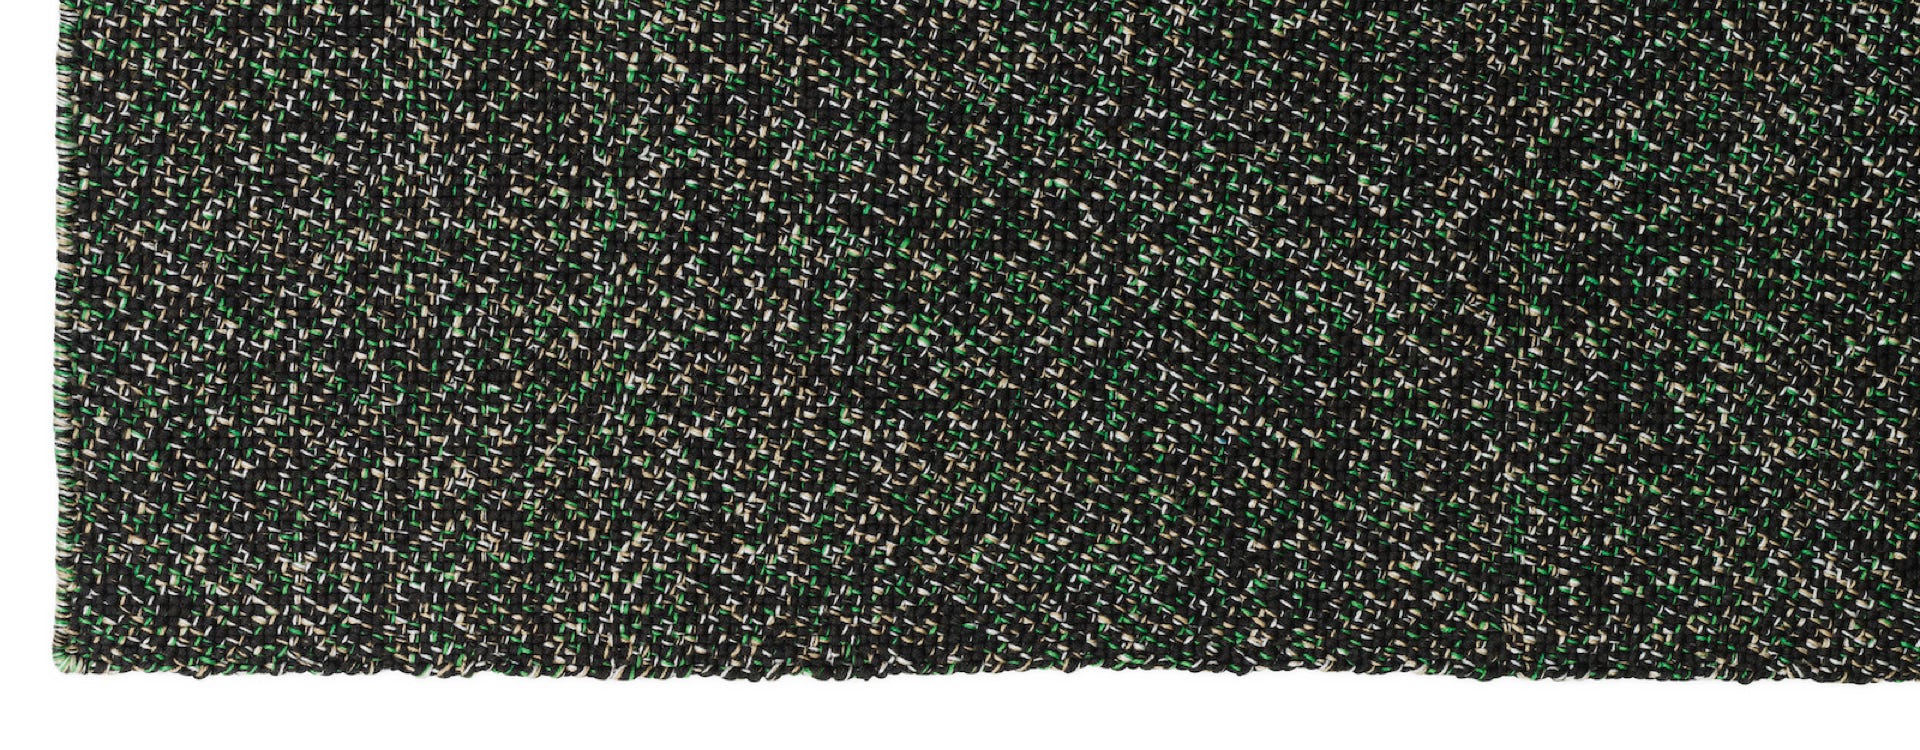 Polli rug  Recycled polyethylene  Simon Legald, 2021